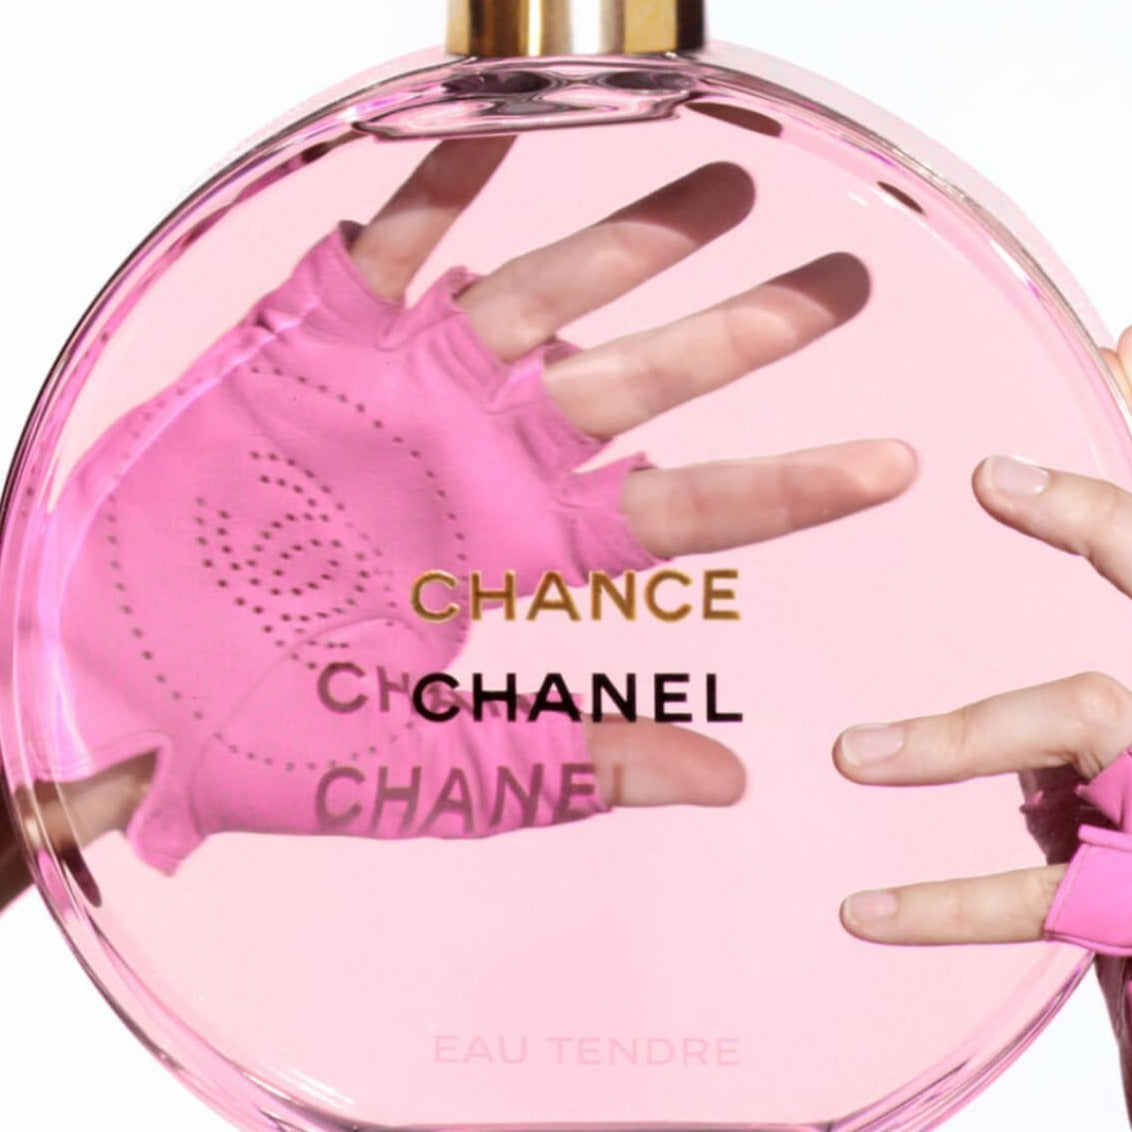 Chanel Chance Eau Tendre EDT 100ml  Romantic Perfume For Women   DScentsation